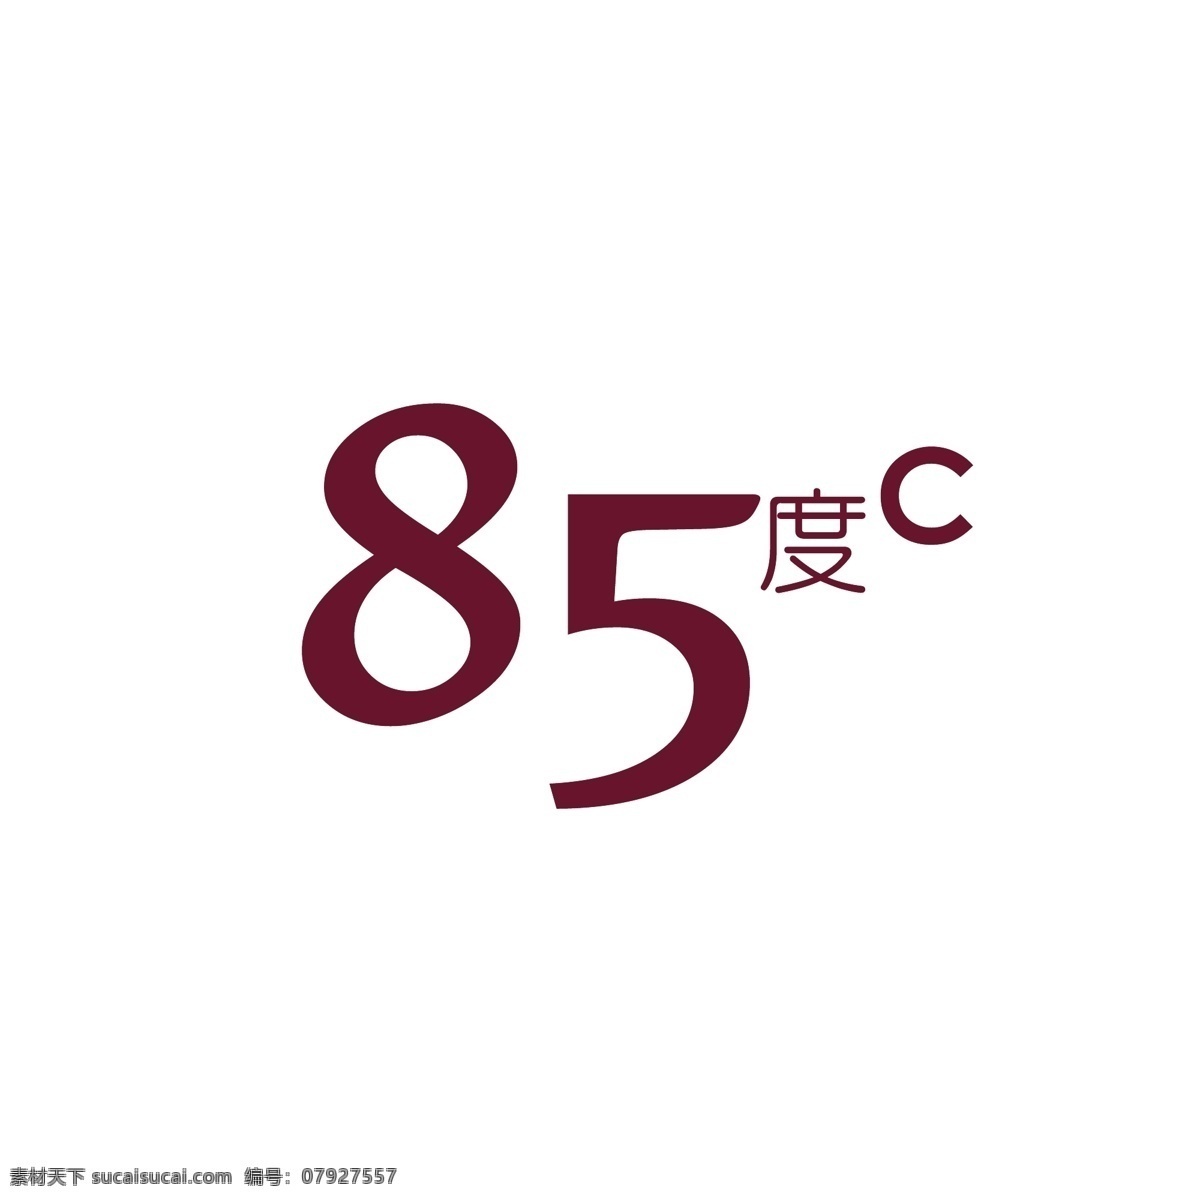 85度c logo 标志设计 面包 西点 咖啡 蛋糕 品牌设计 图标 标志logo 标志图标 企业 标志